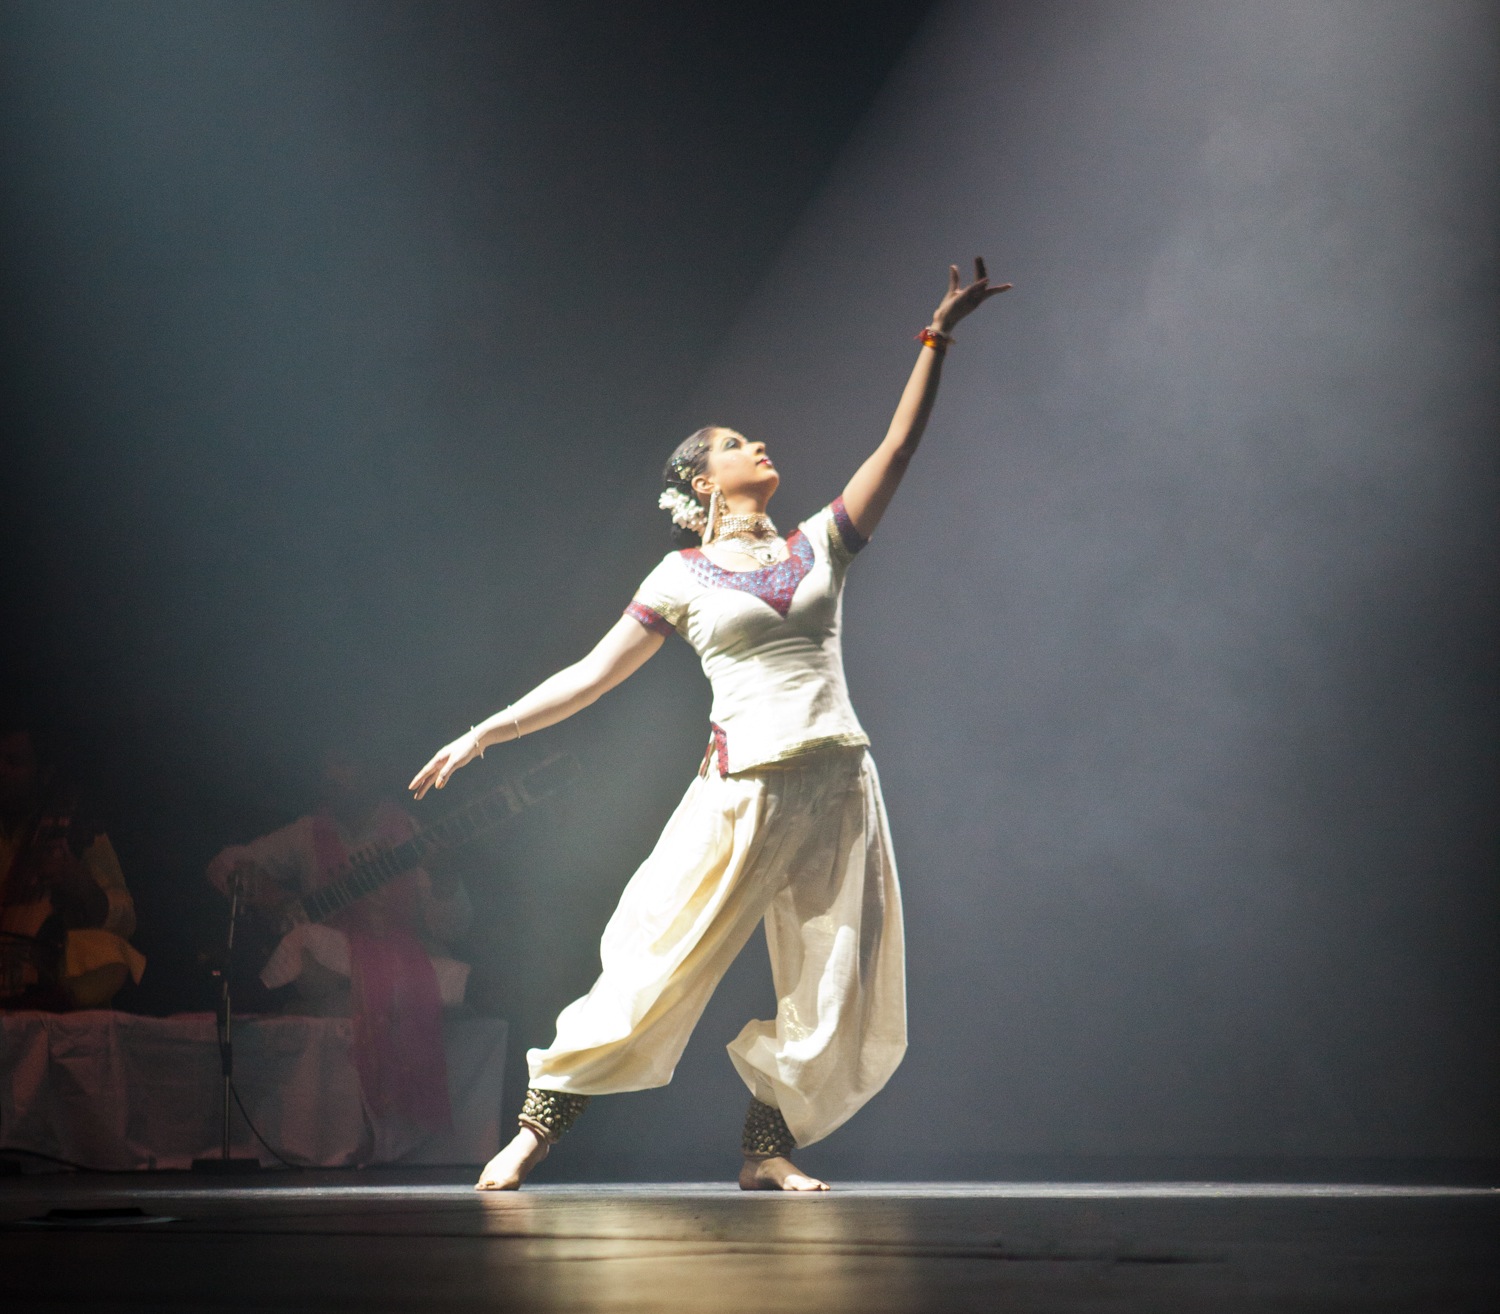 Indische Kathal-Darbietung von Vidha Lal und ihrer Gruppe The Spirit am 20.03.2011 im Akzent Theater